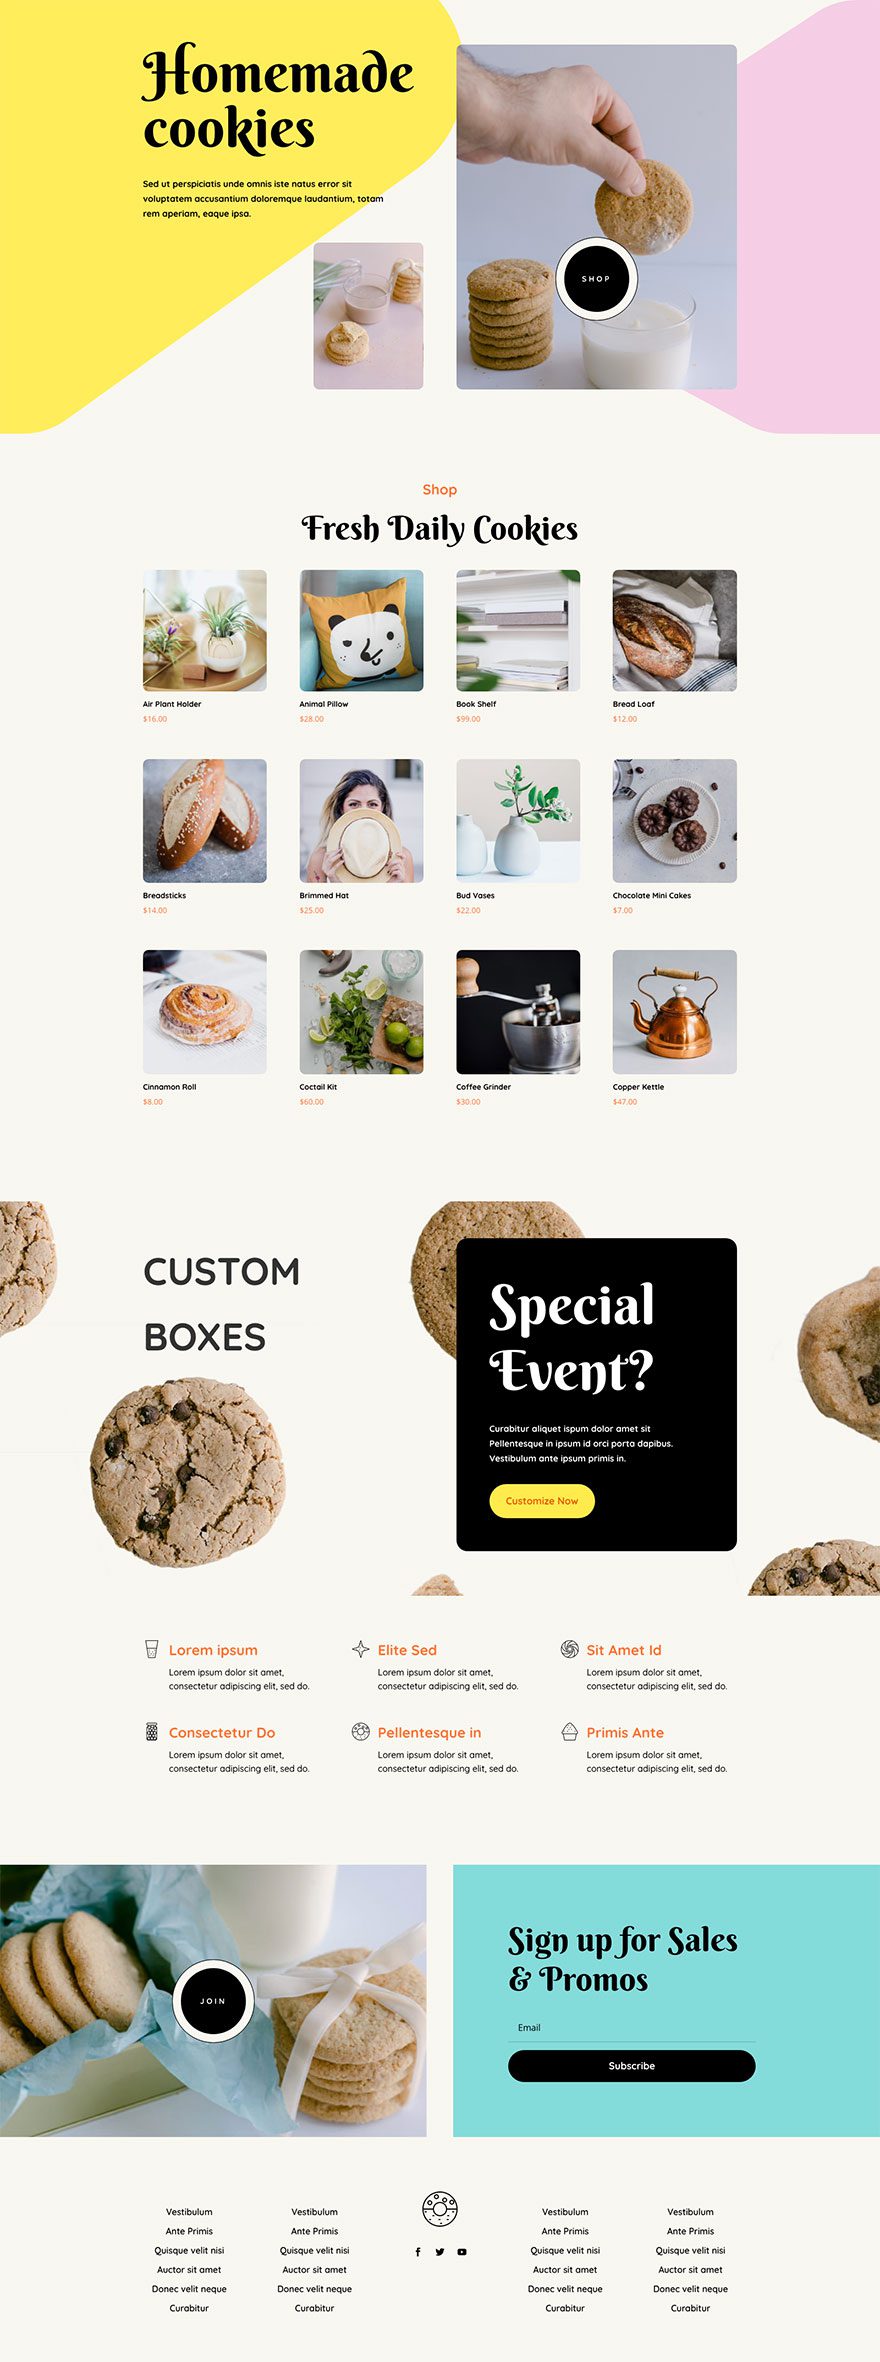 homemade cookies website